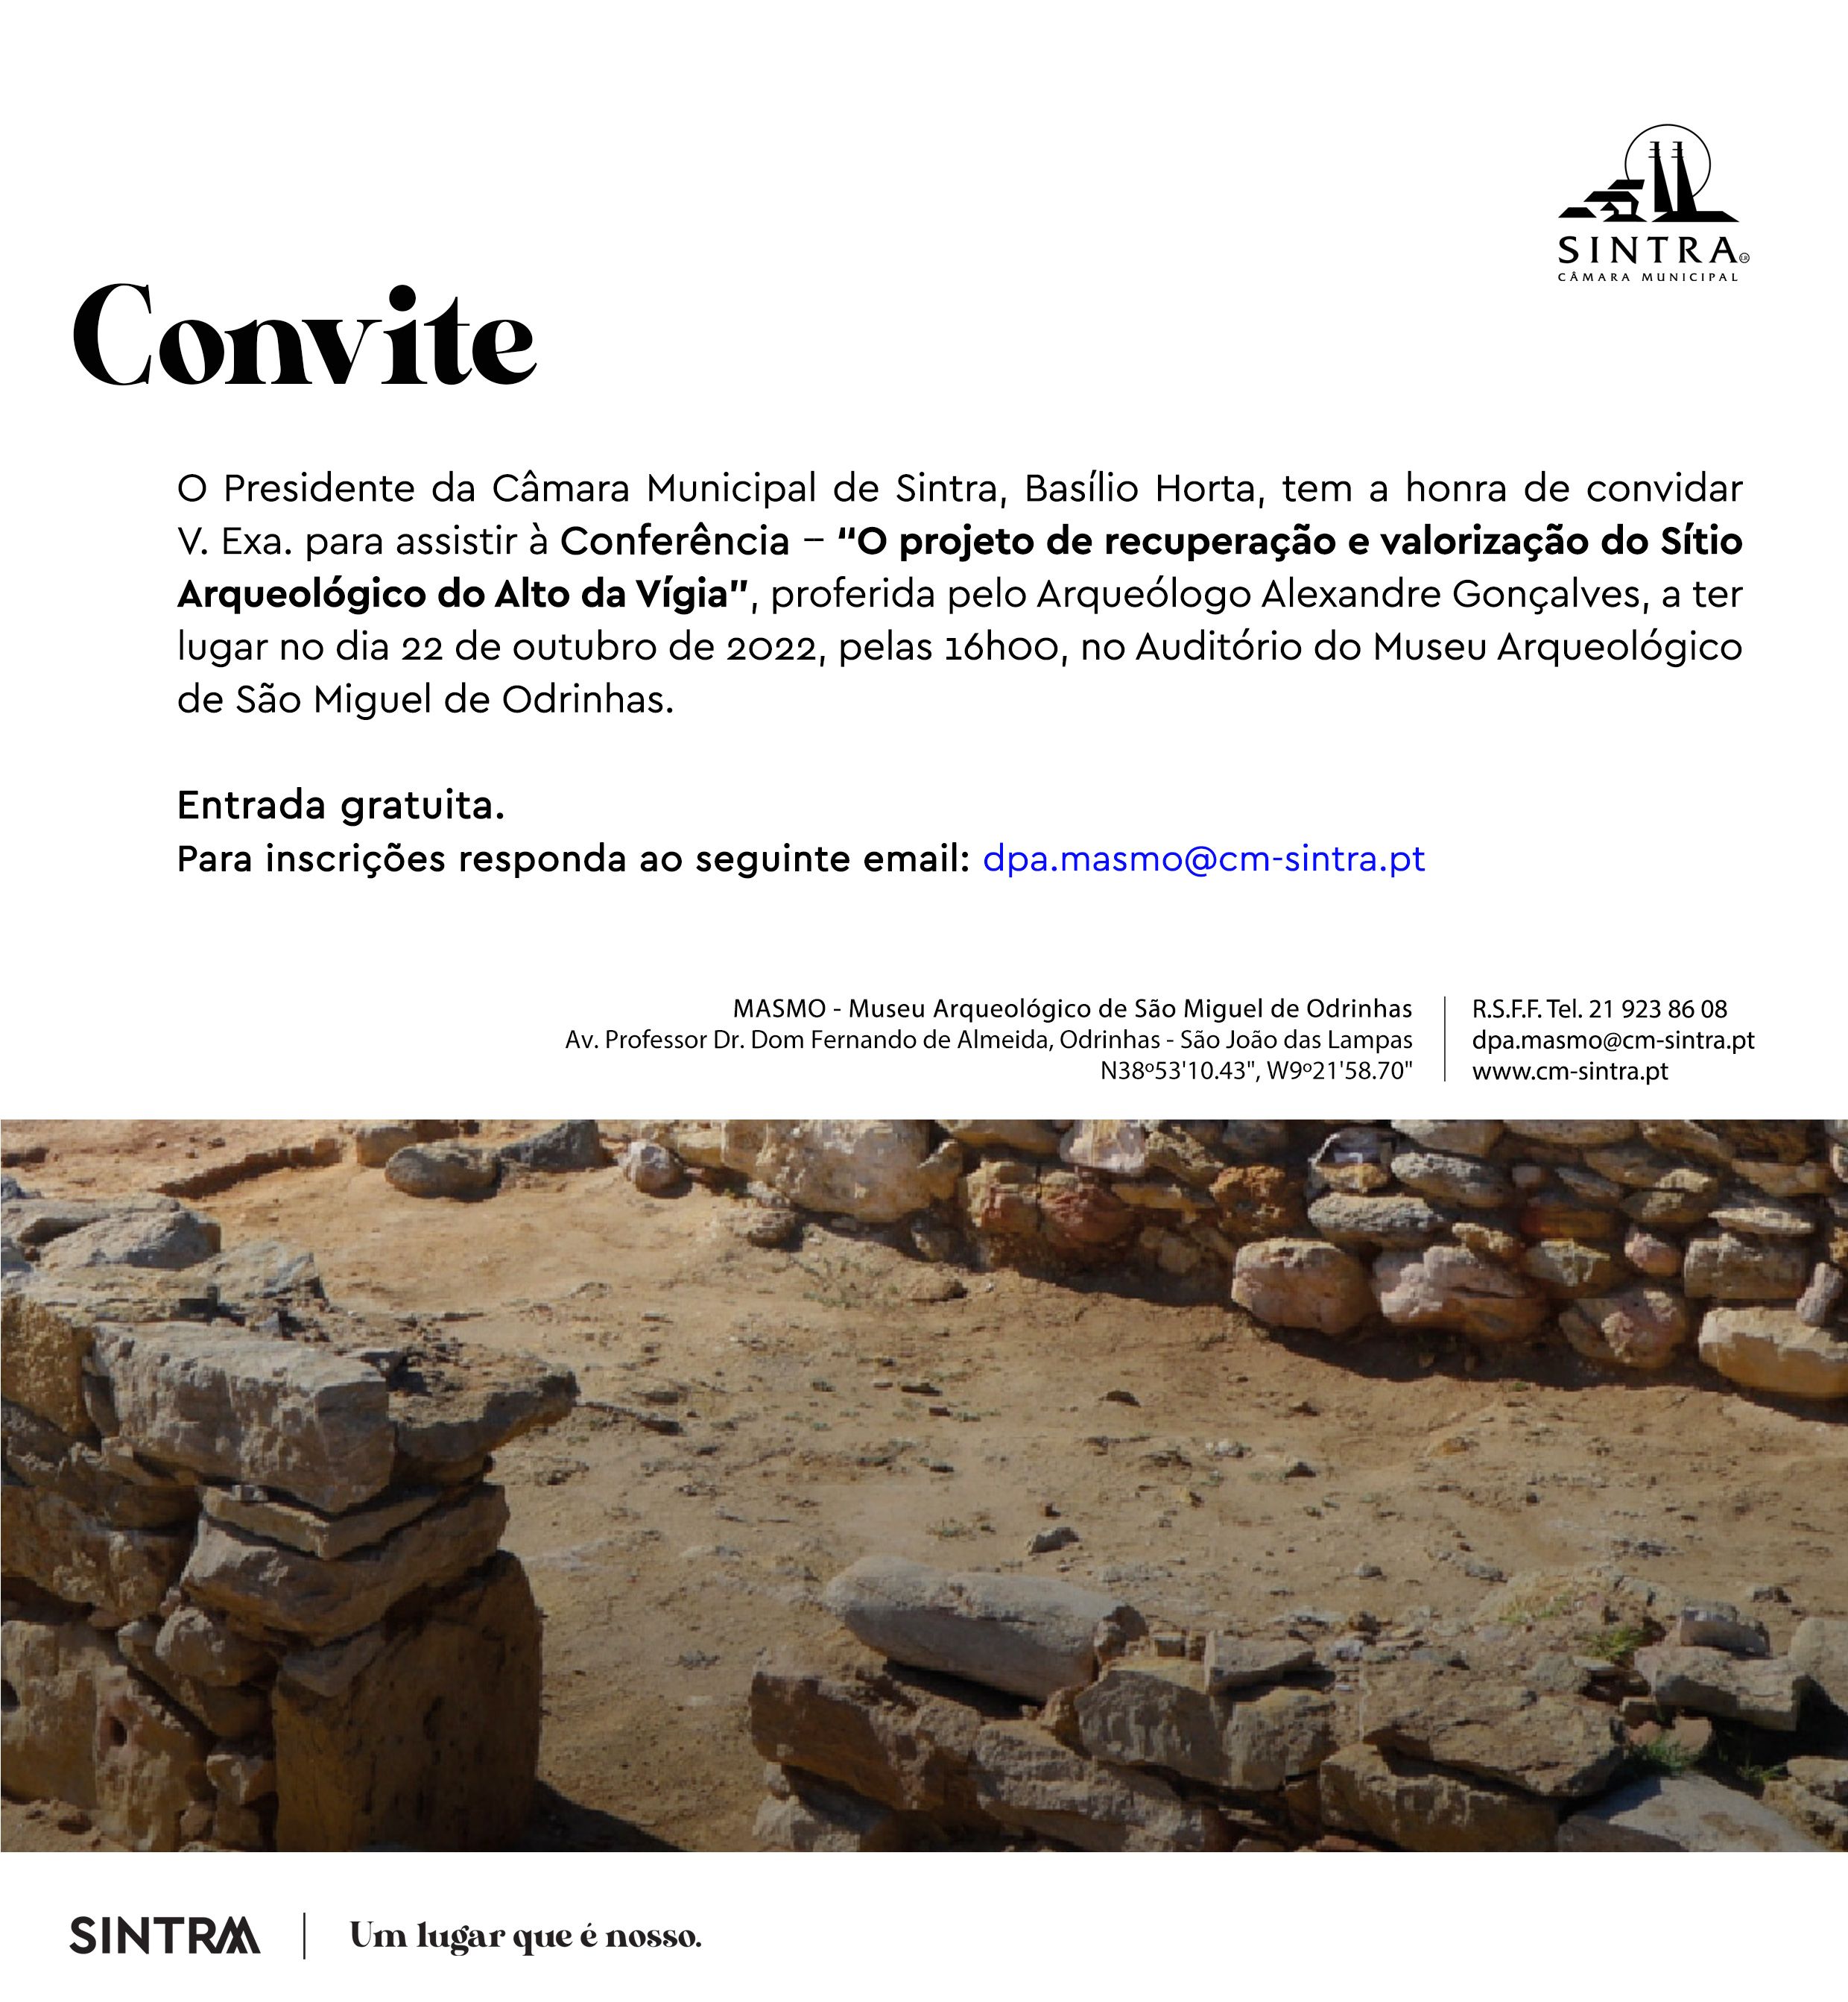 Convite_Conferência O projeto de recuperação e valorização do Sítio Arqueológico do Alto da Vigia 22 de outubro 2022.jpg